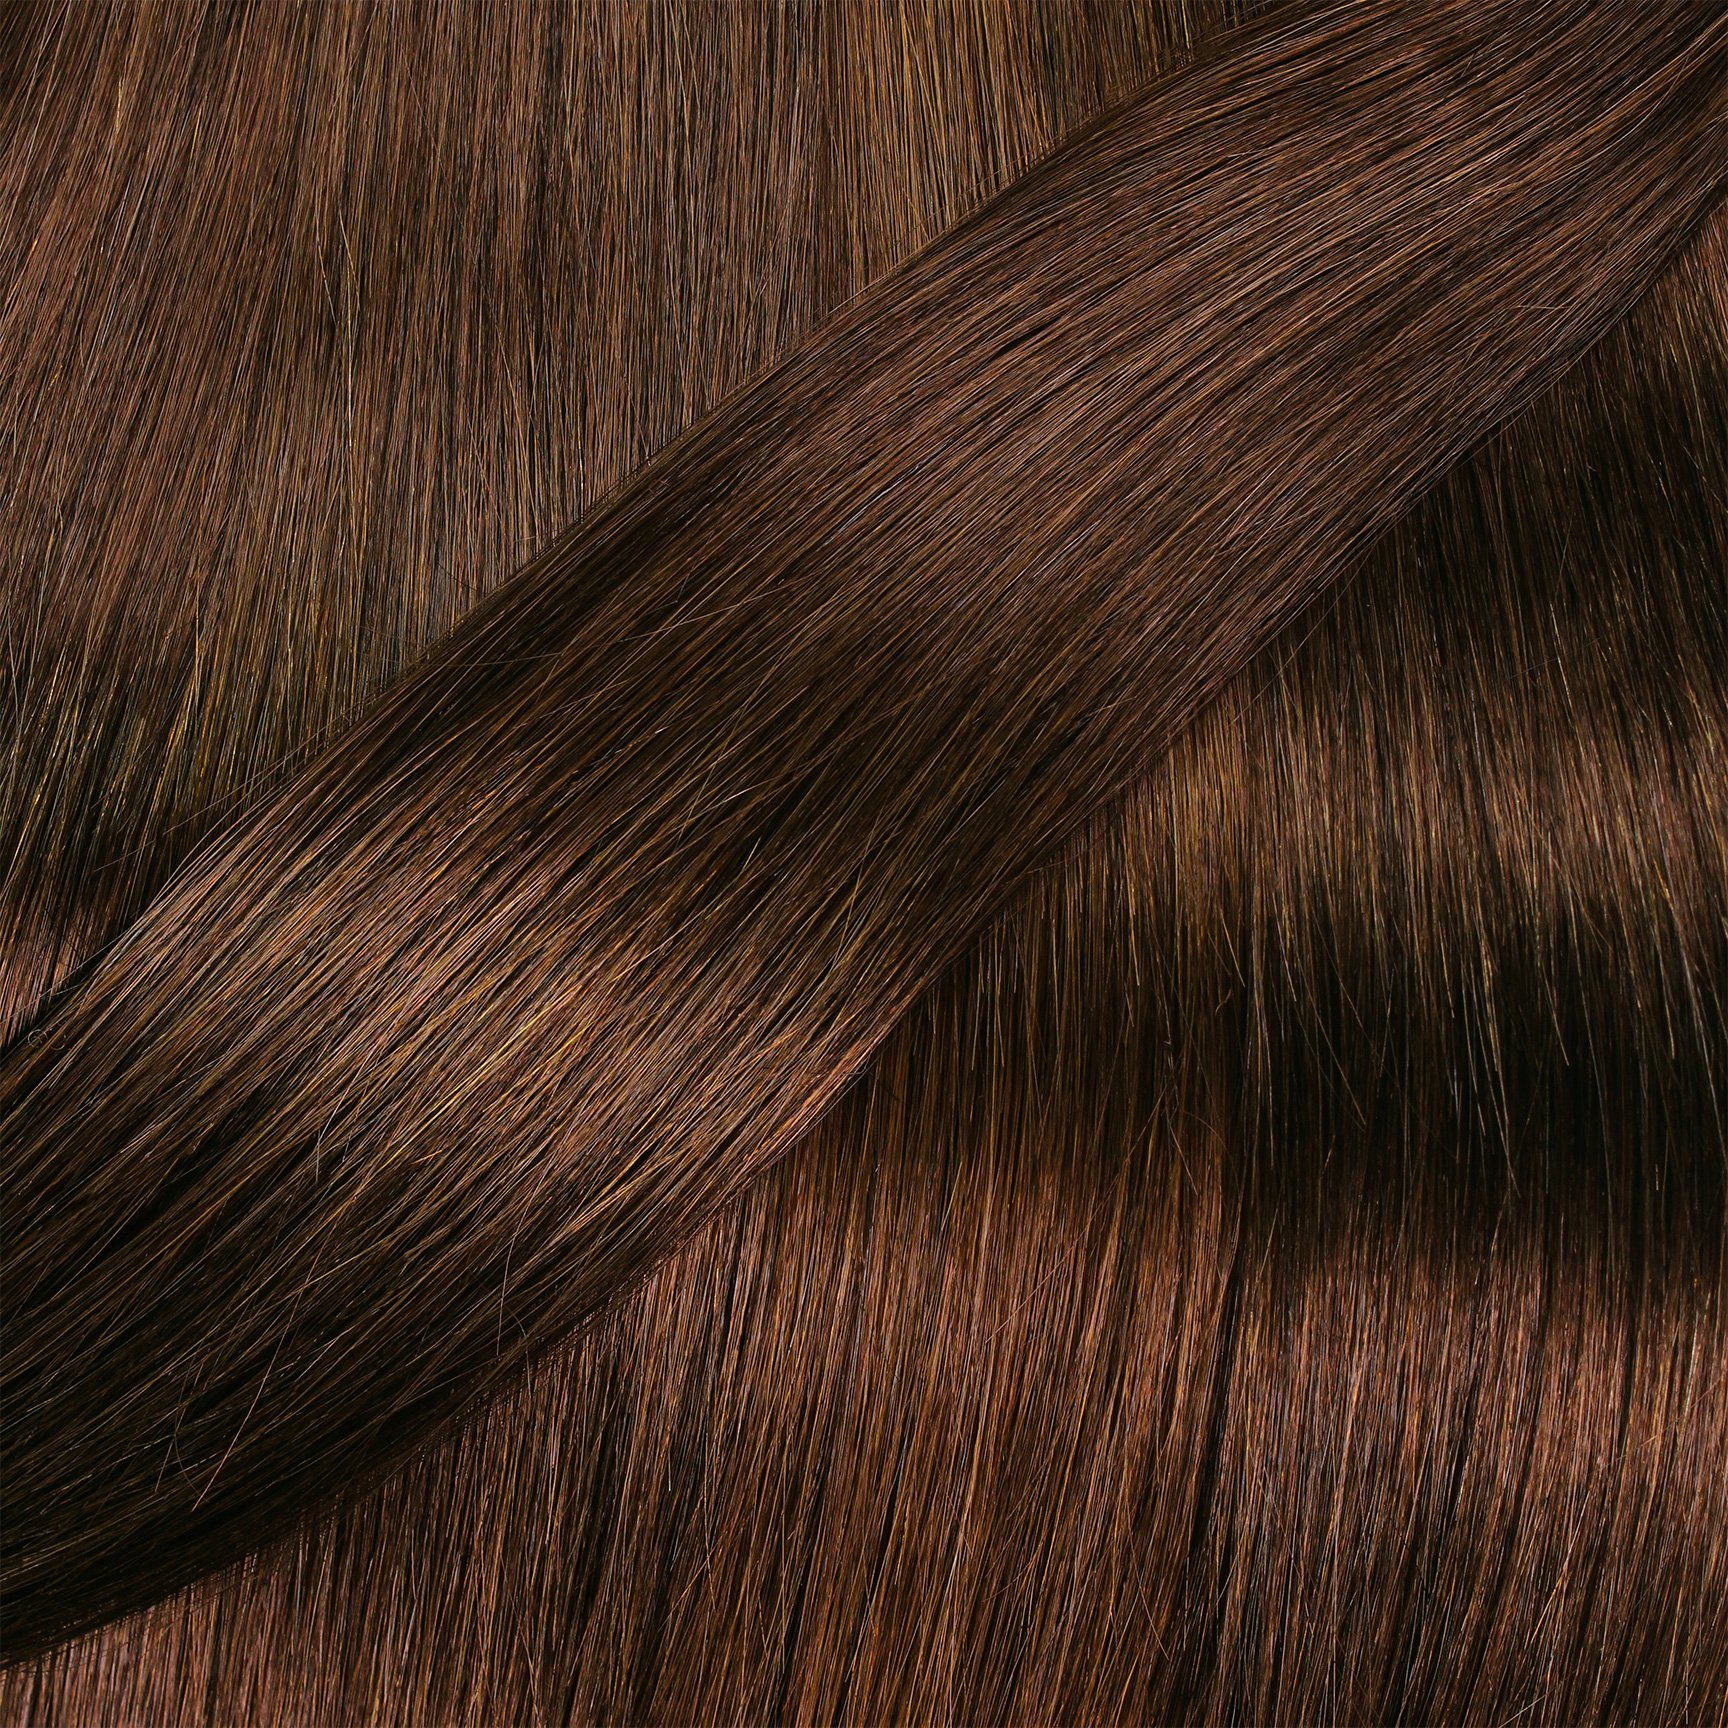 Bonding gewellt #6/3 0.5g hair2heart 40cm Gold Echthaar-Extension Extensions Dunkelblond